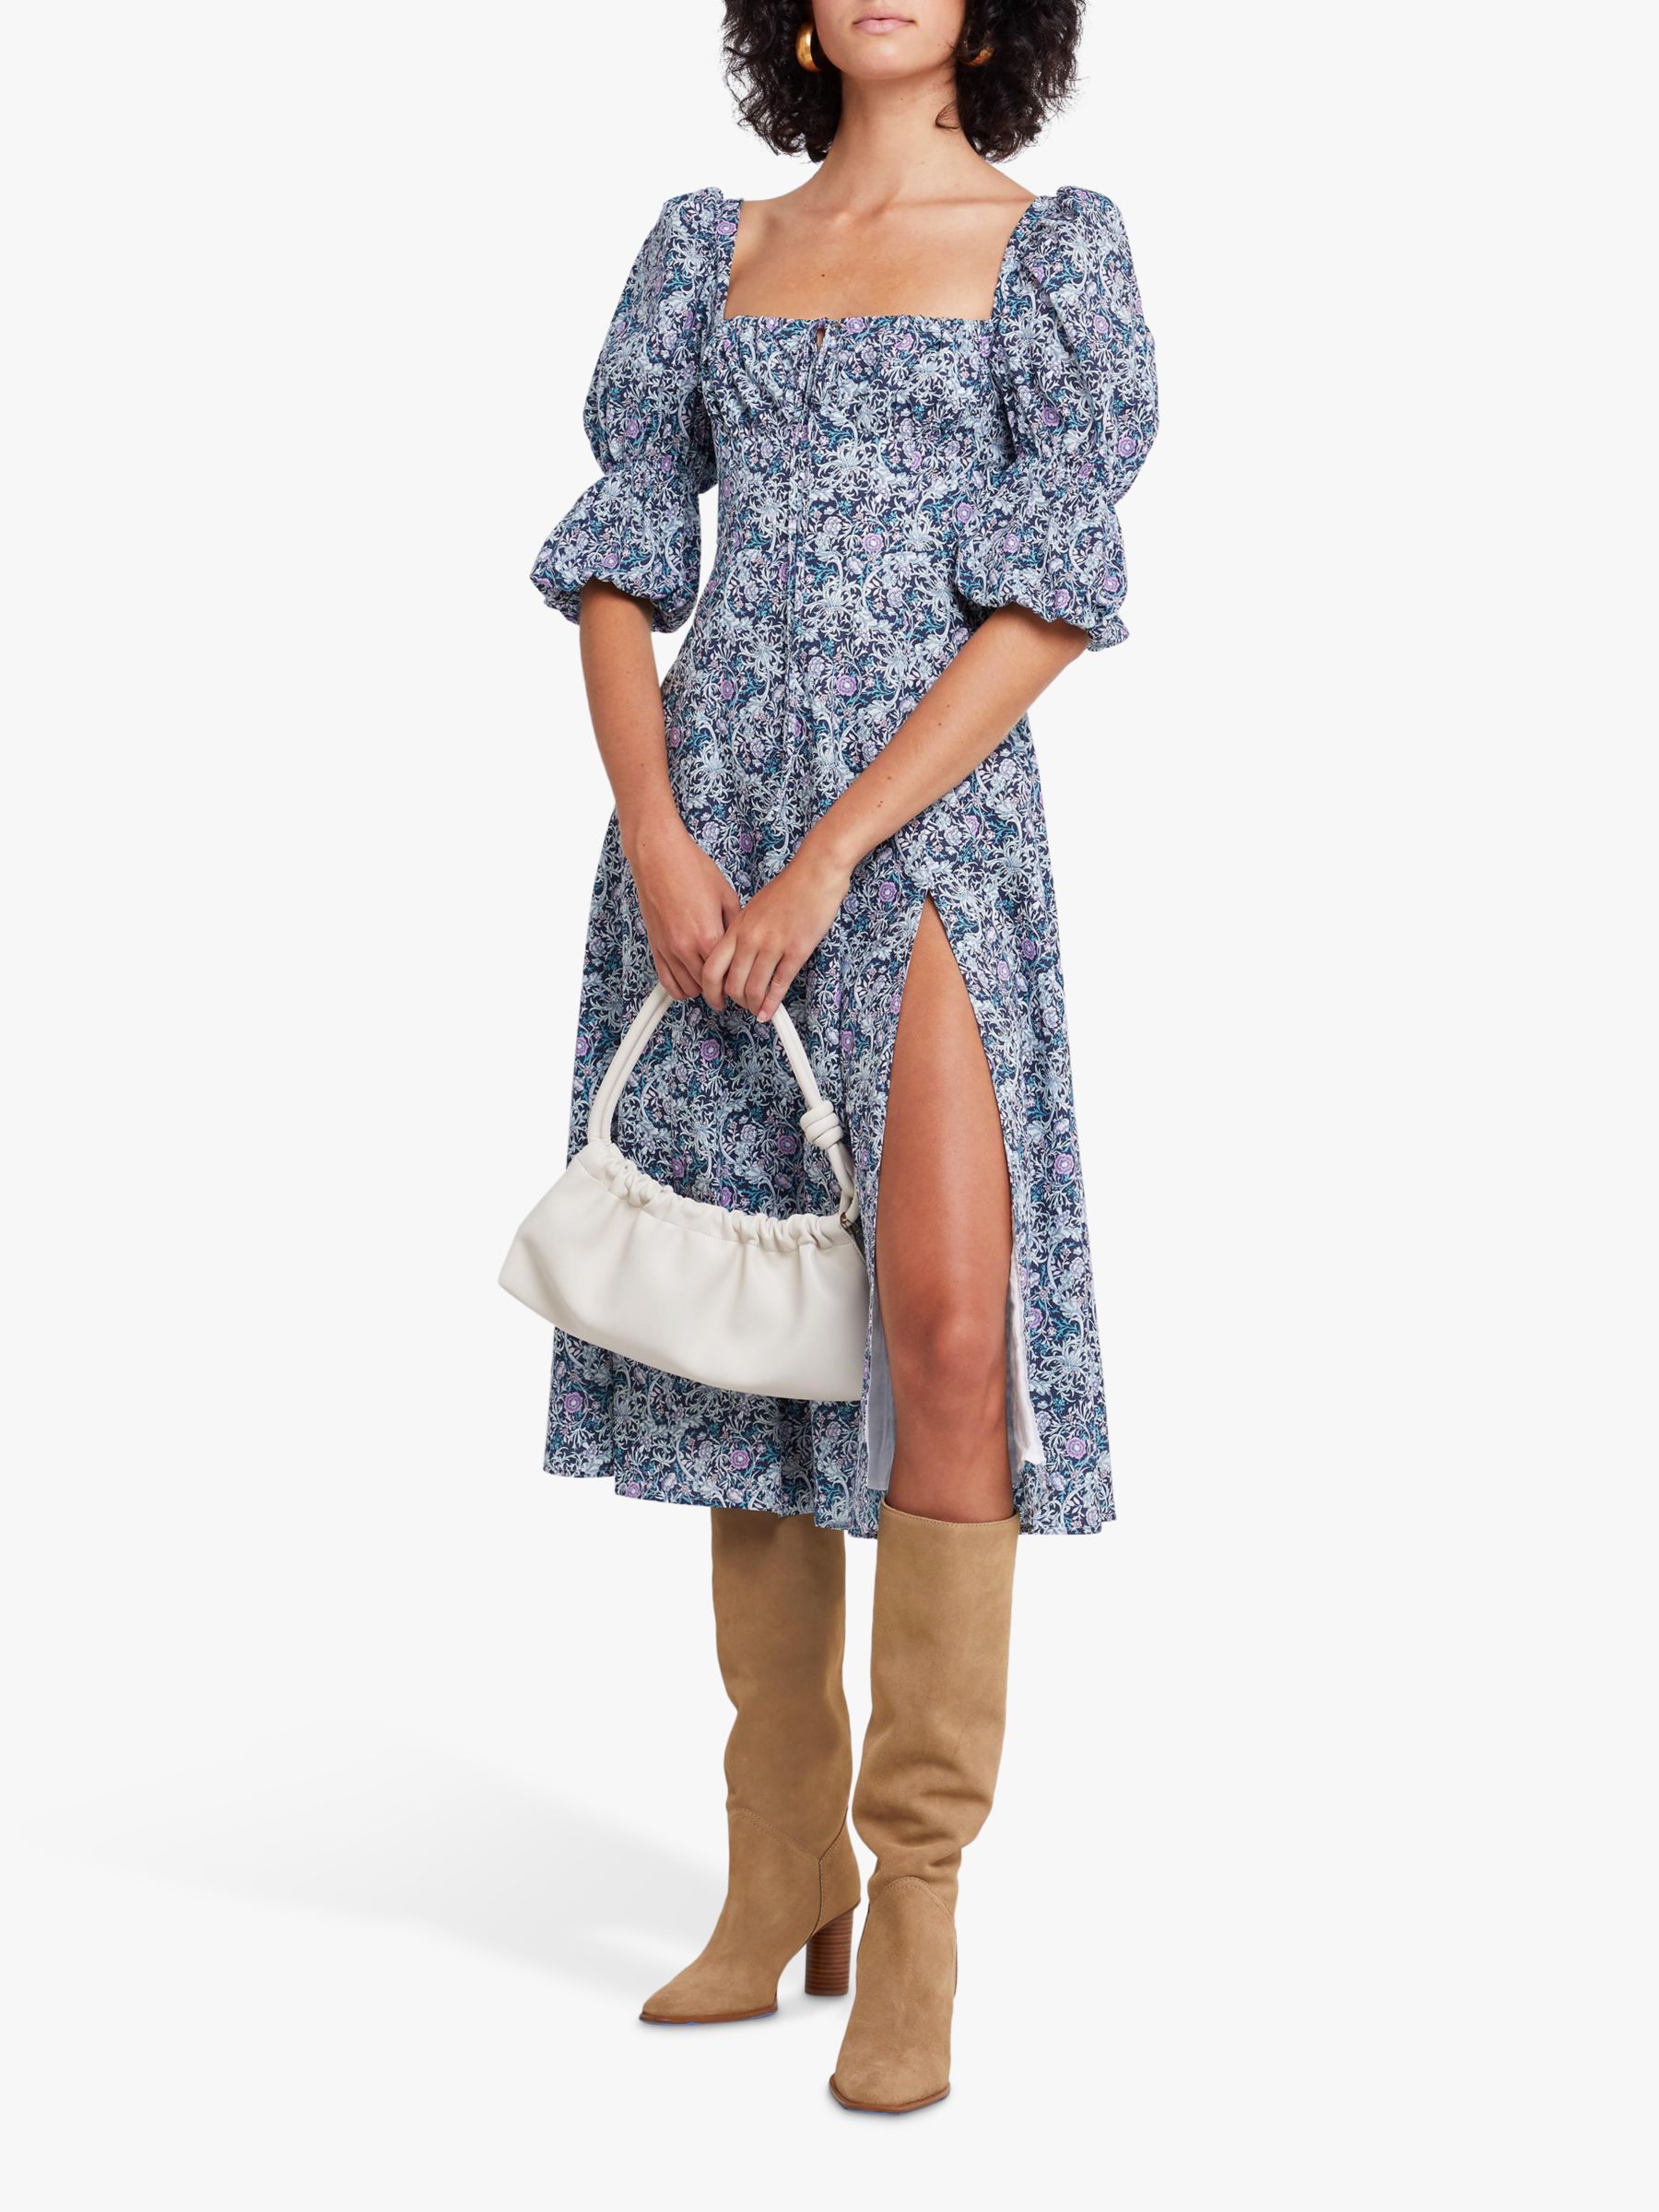 o.p.t Nina Floral Midi Dress, Blue/Multi, XS